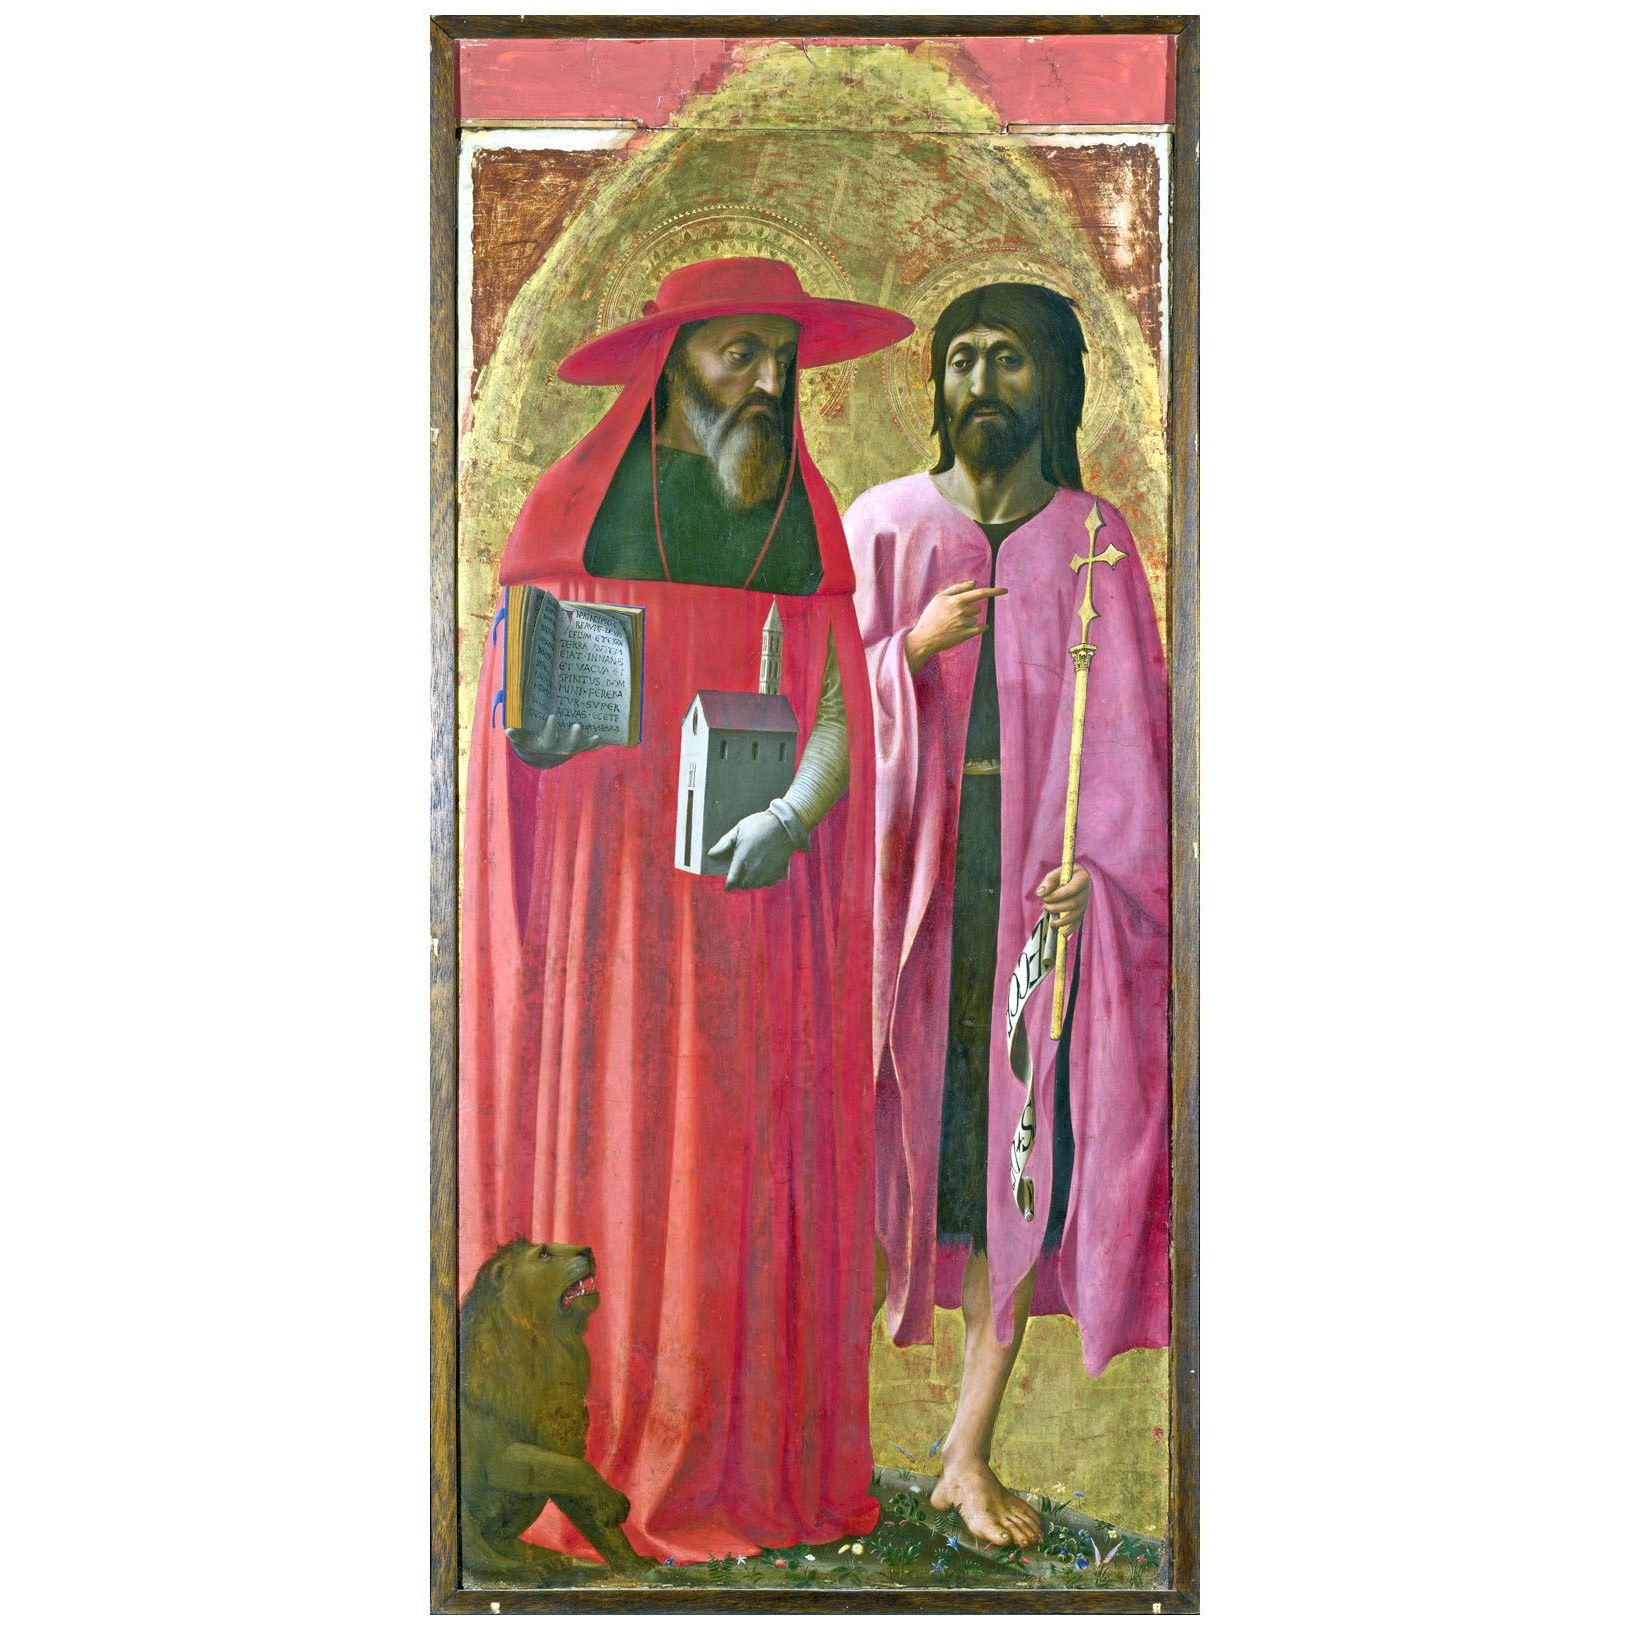 Мазаччо. Св. Иероним и Иоанн Креститель. Около 1428. Нац. галерея, Лондон